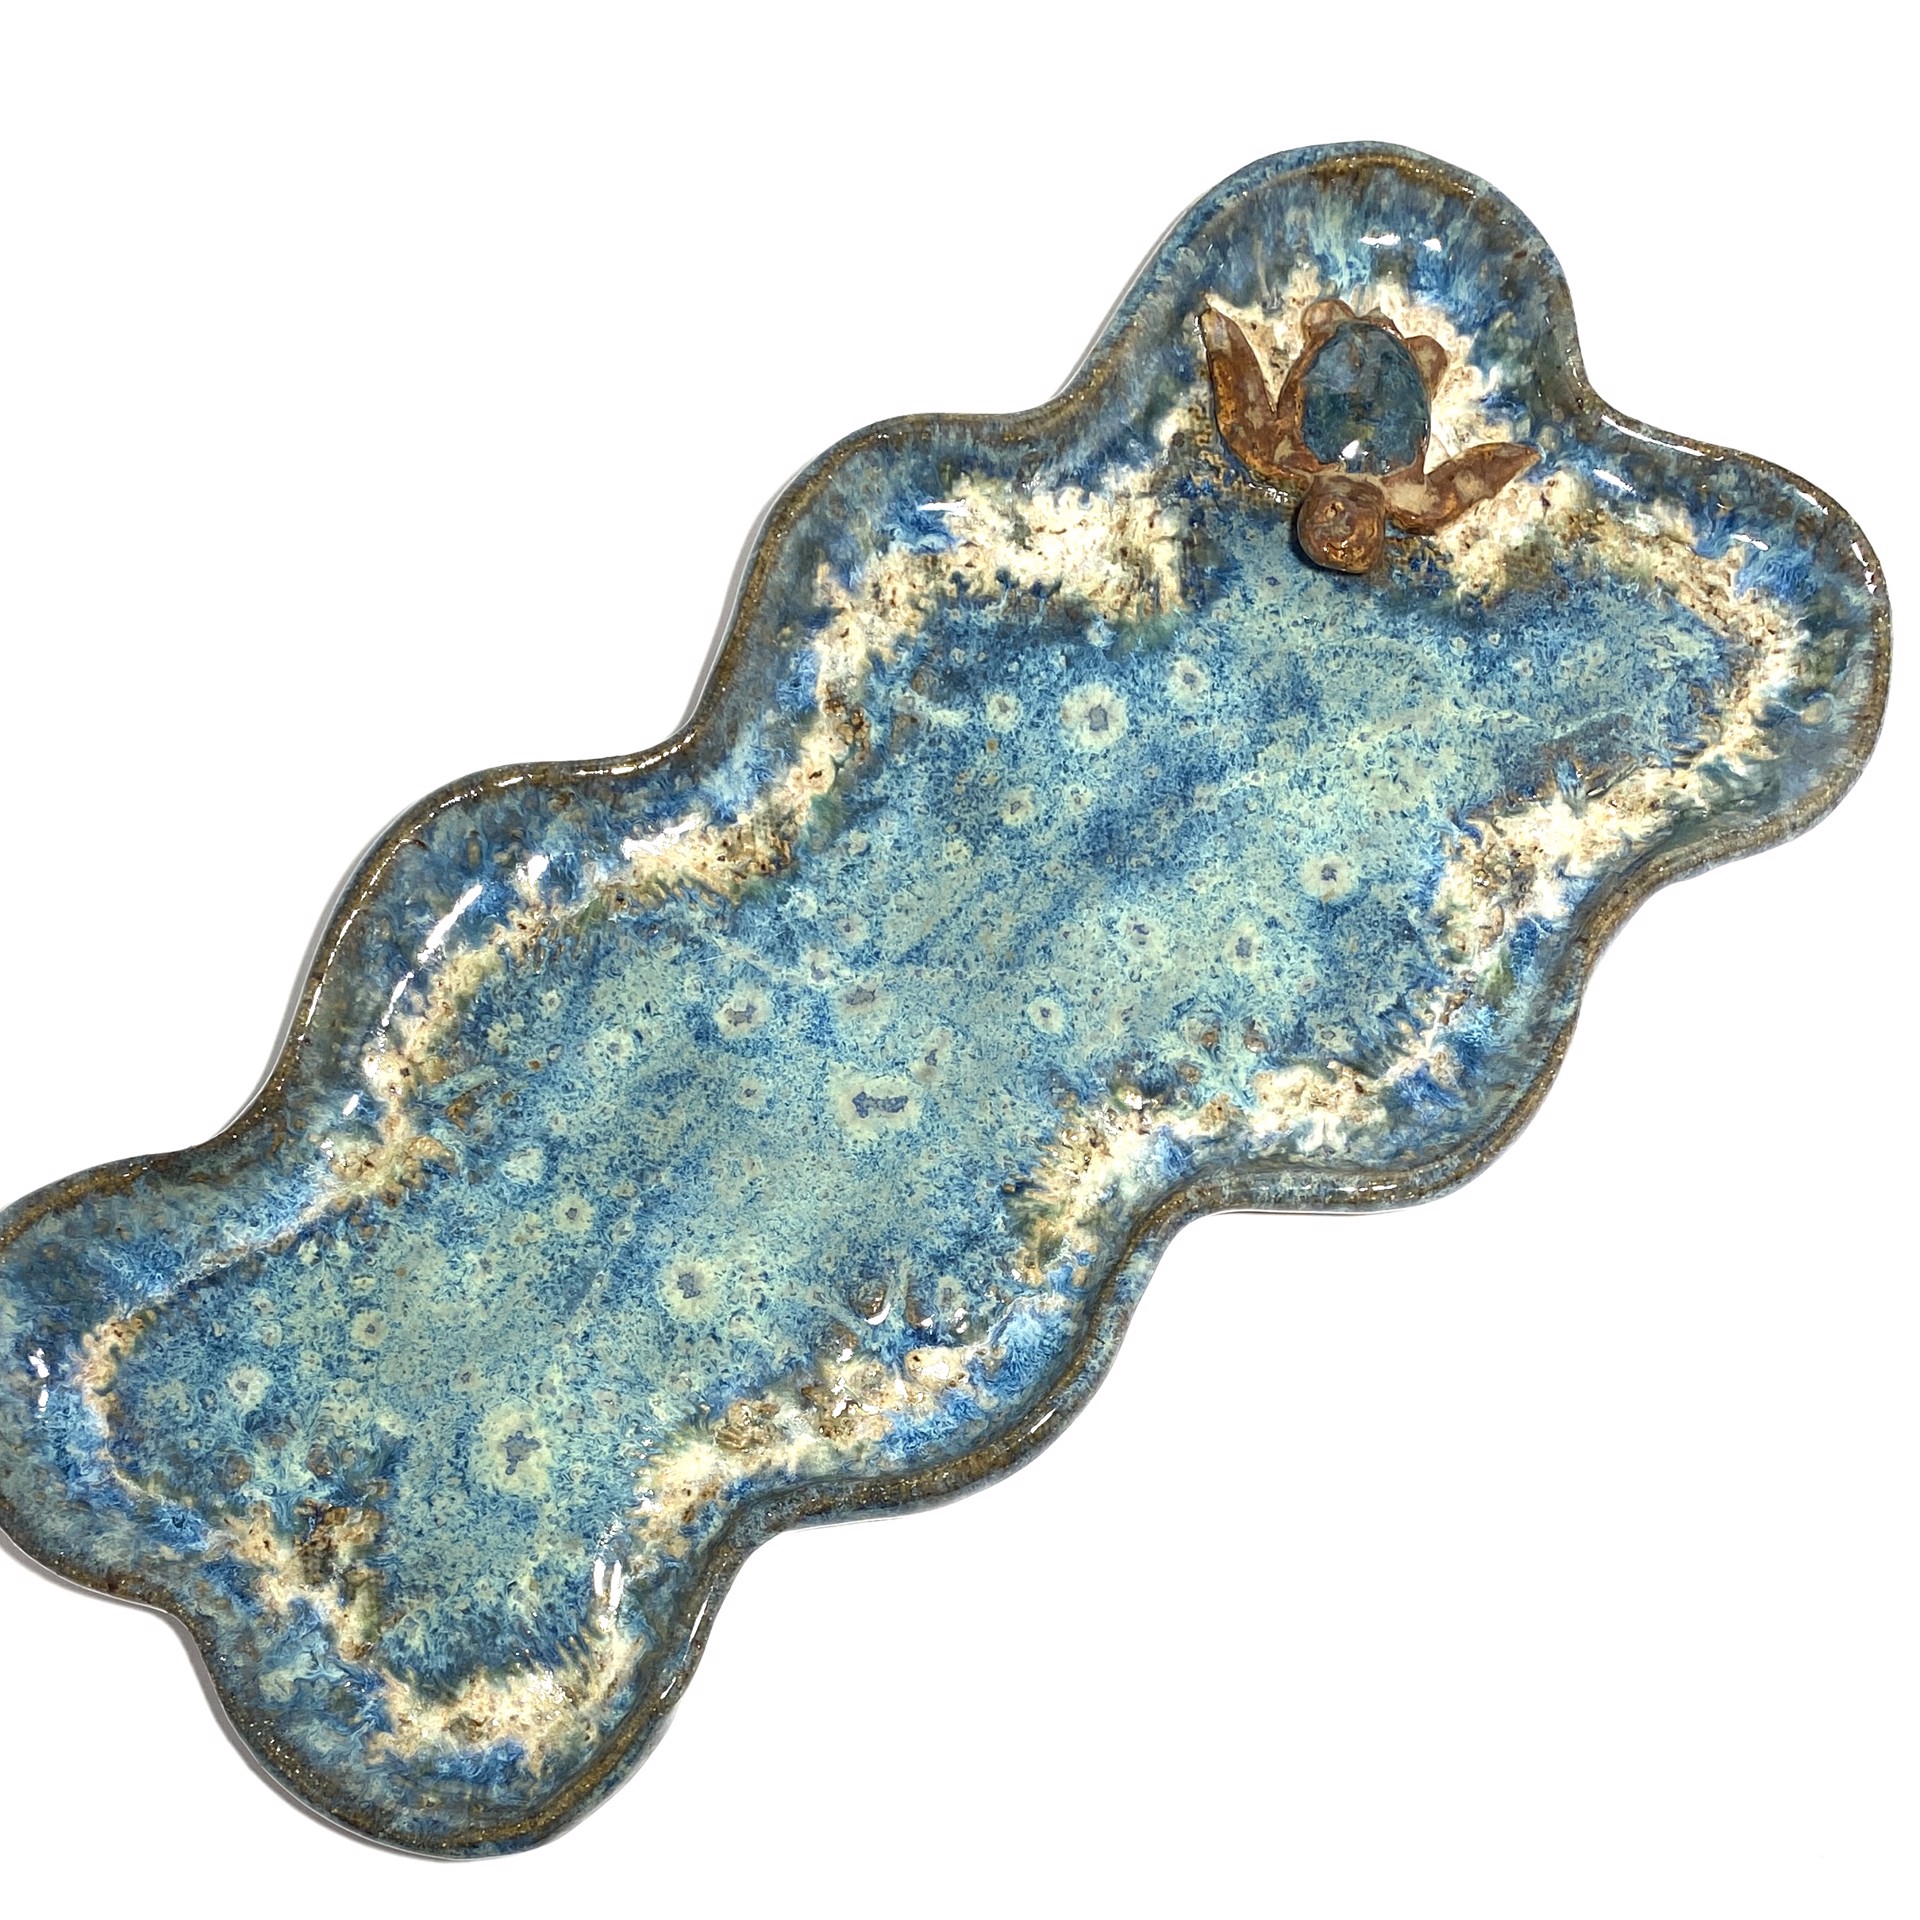 Wavy Tray with Turtle (Blue Glaze) LG23-1139 by Jim & Steffi Logan